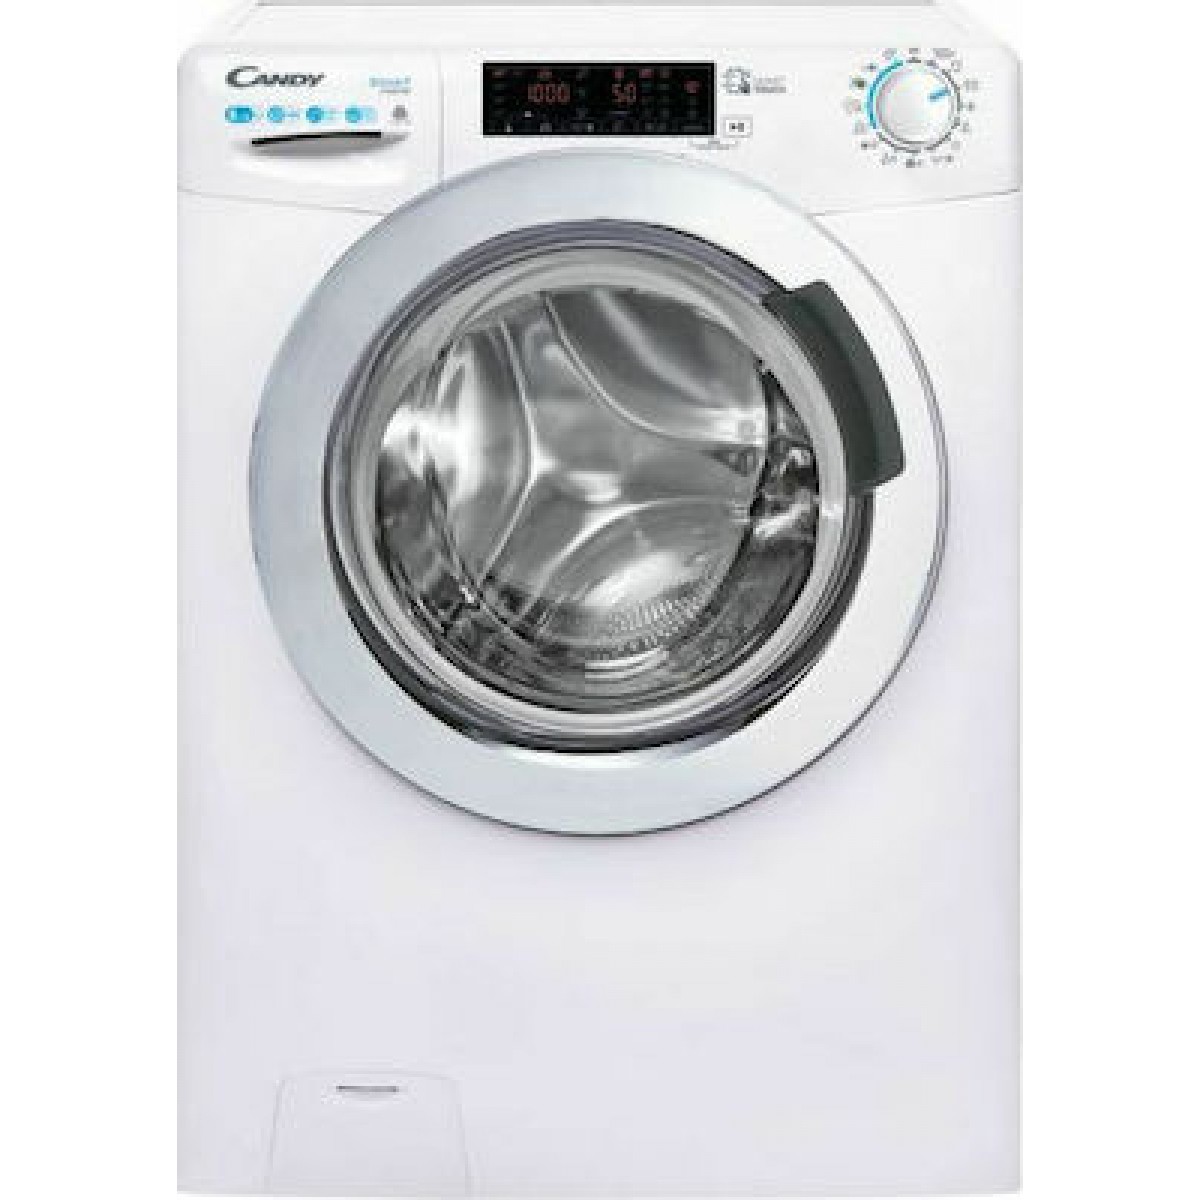  Πλυντήριο-Στεγνωτήριο Ρούχων Candy CSWS 485TWMCE/1-S 8kg/5kg Ατμού 1400 Στροφές  Πλυντήρια-Στεγνωτήρια